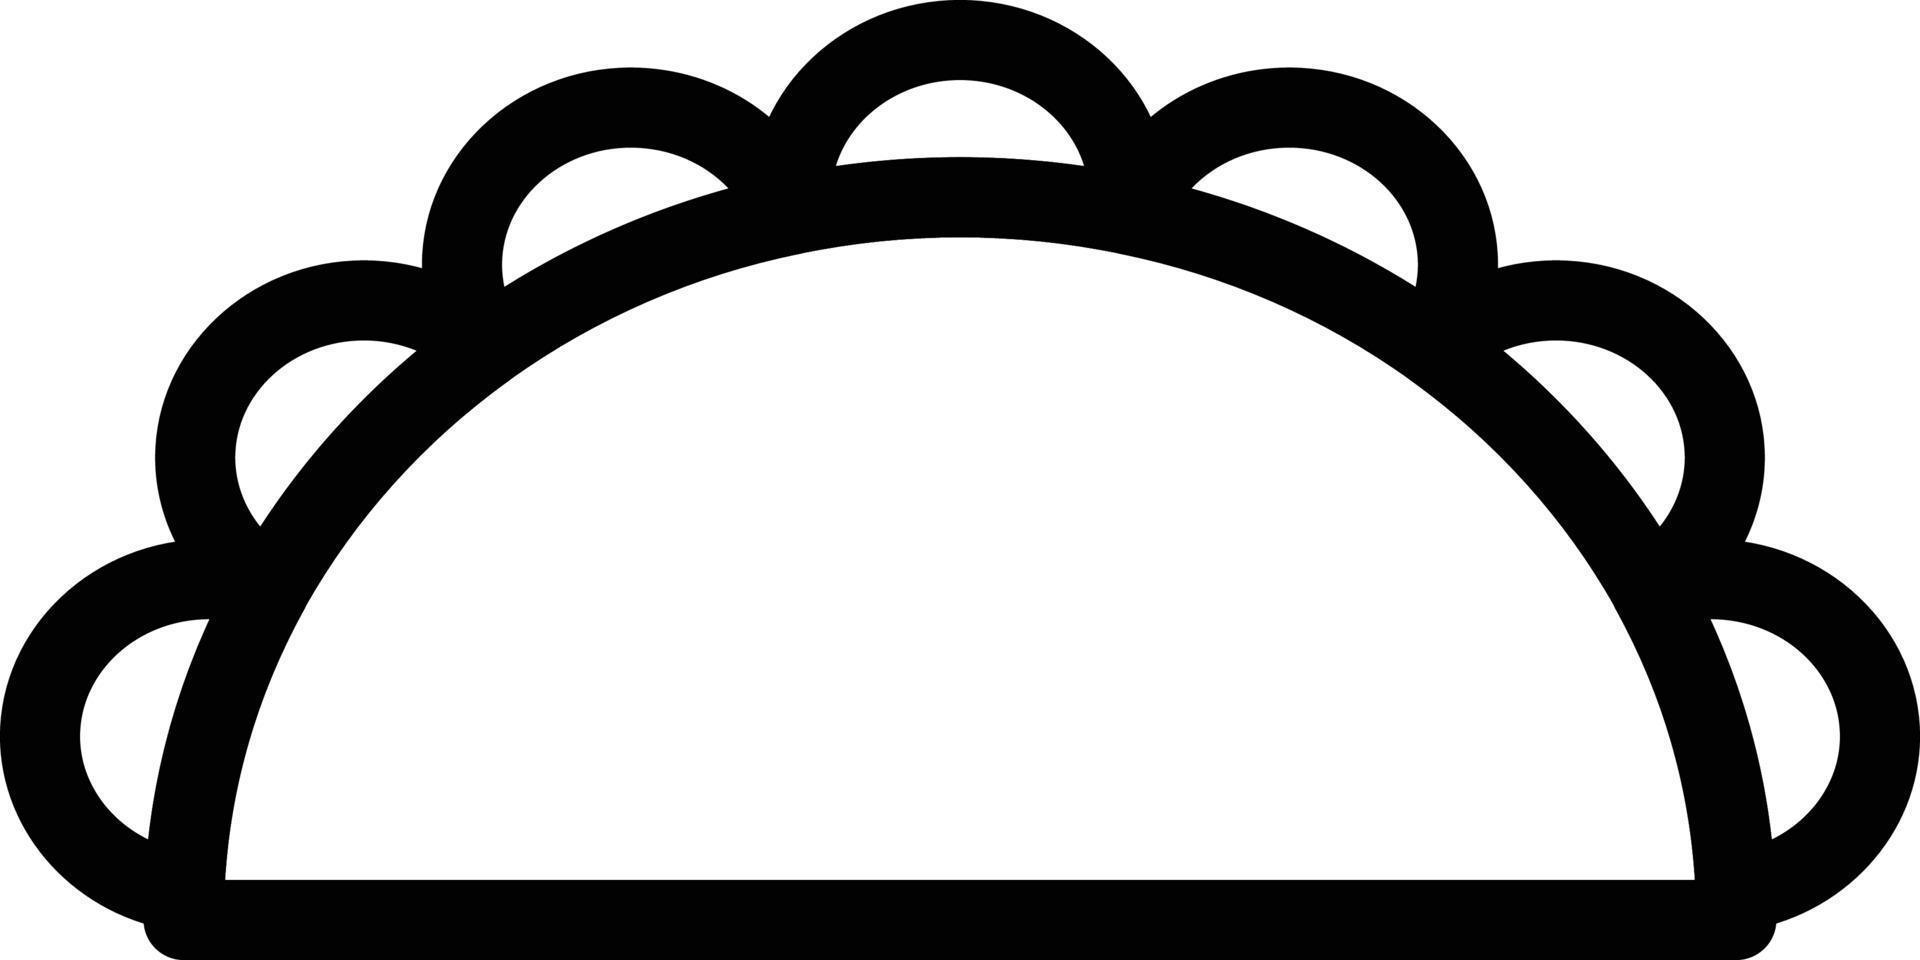 illustrazione vettoriale di shawarma su uno sfondo. simboli di qualità premium. icone vettoriali per il concetto e la progettazione grafica.